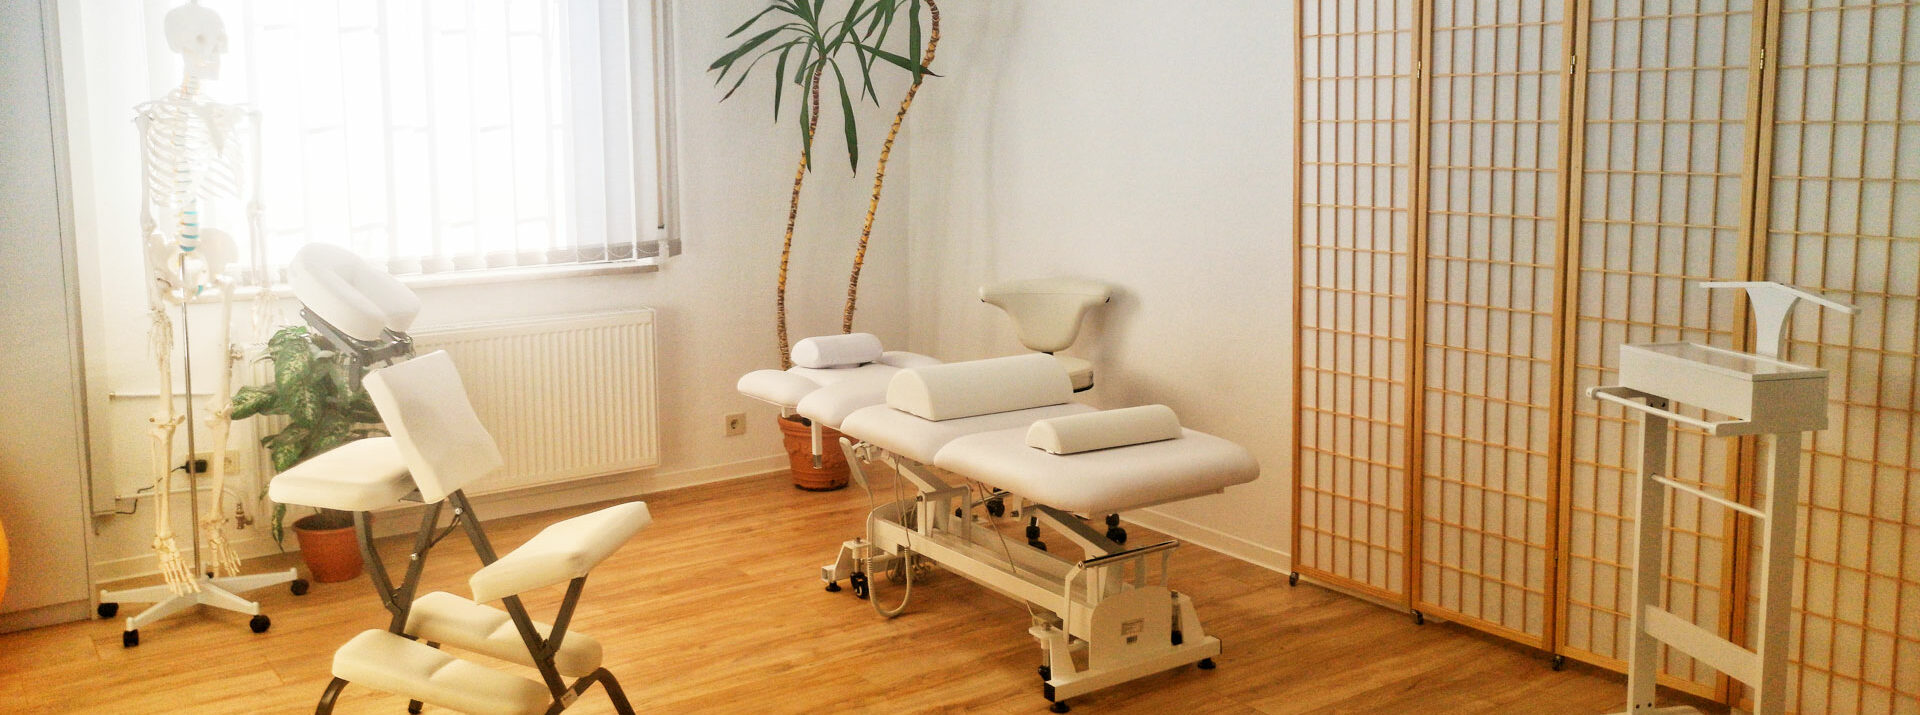 Praxis für Physiotherapie in Heusenstamm